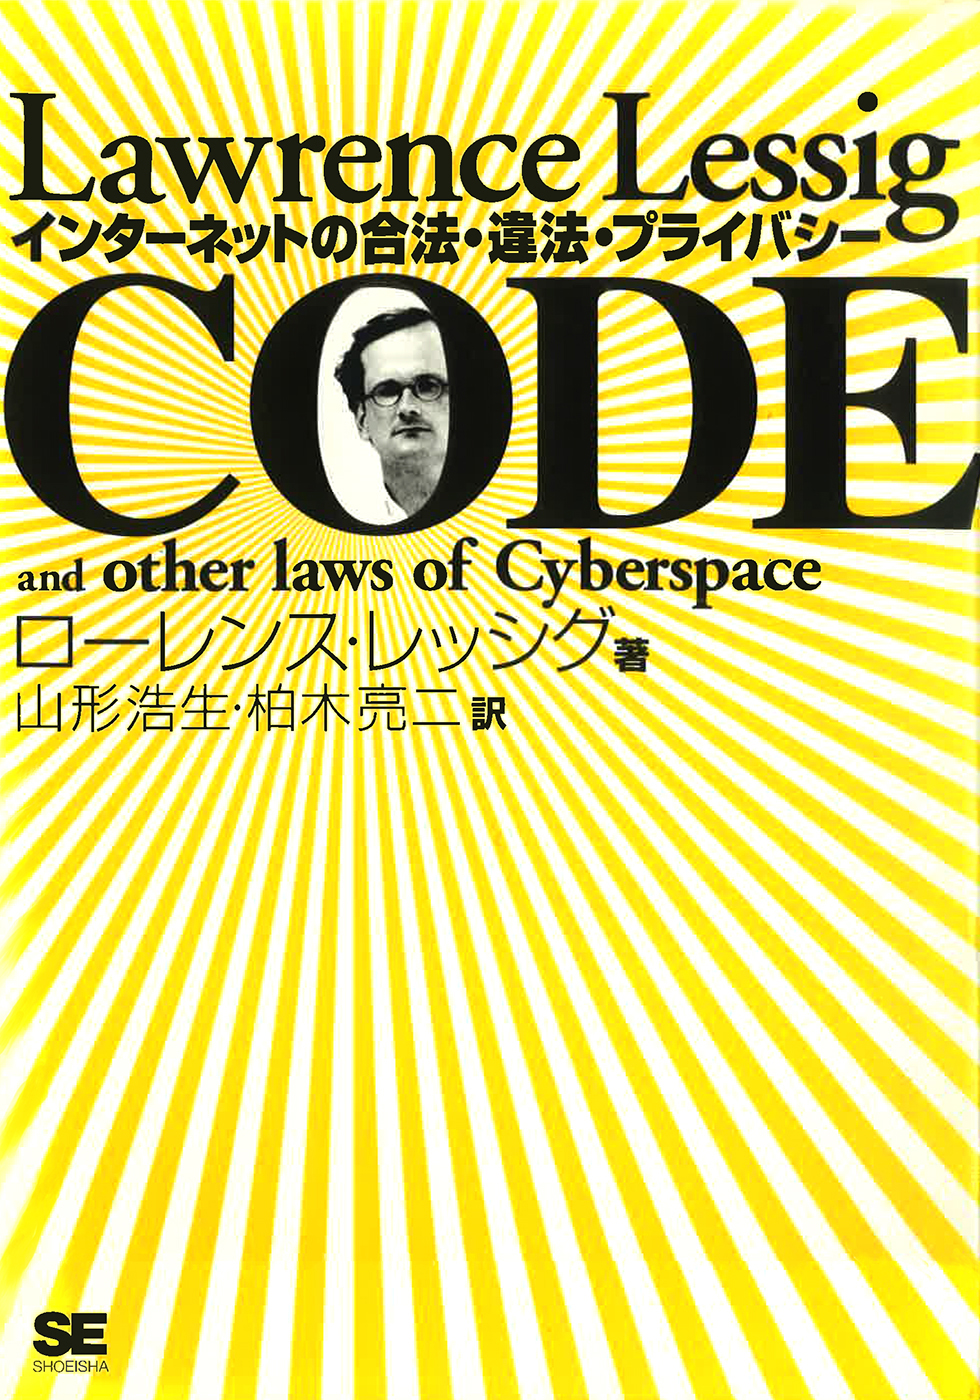 ローレンス・レッシグ『code──インターネットの合法・違法・プライバシー』